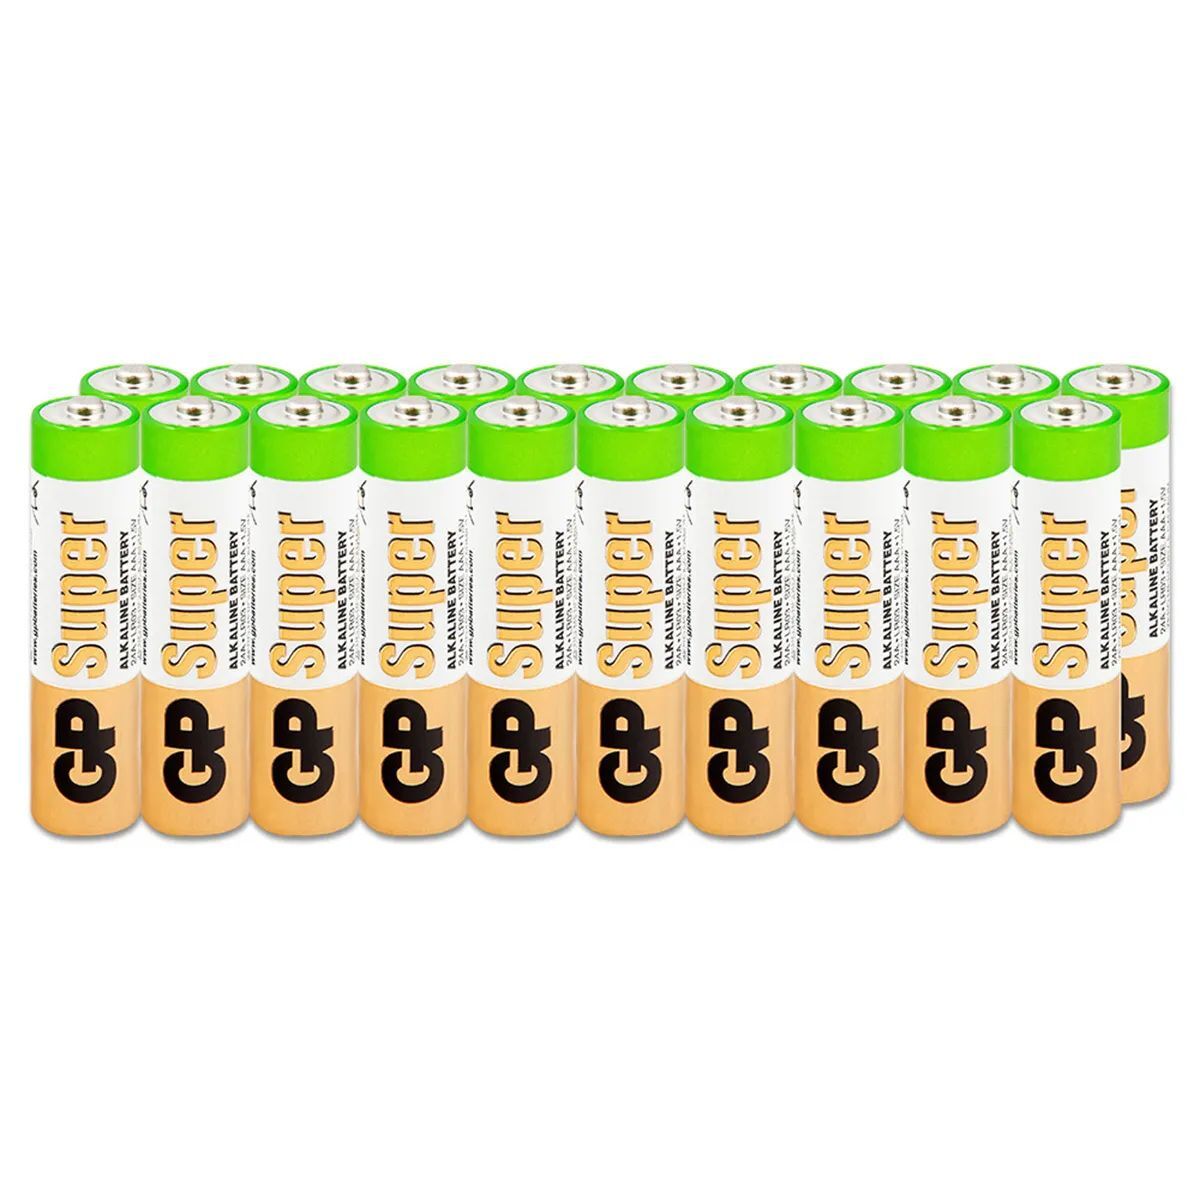 Батарейки GP Super Alkaline ААA/LR03 (мизинчиковые) упаковка 20 штук - купить в Москве, цены на Мегамаркет | 600013438224